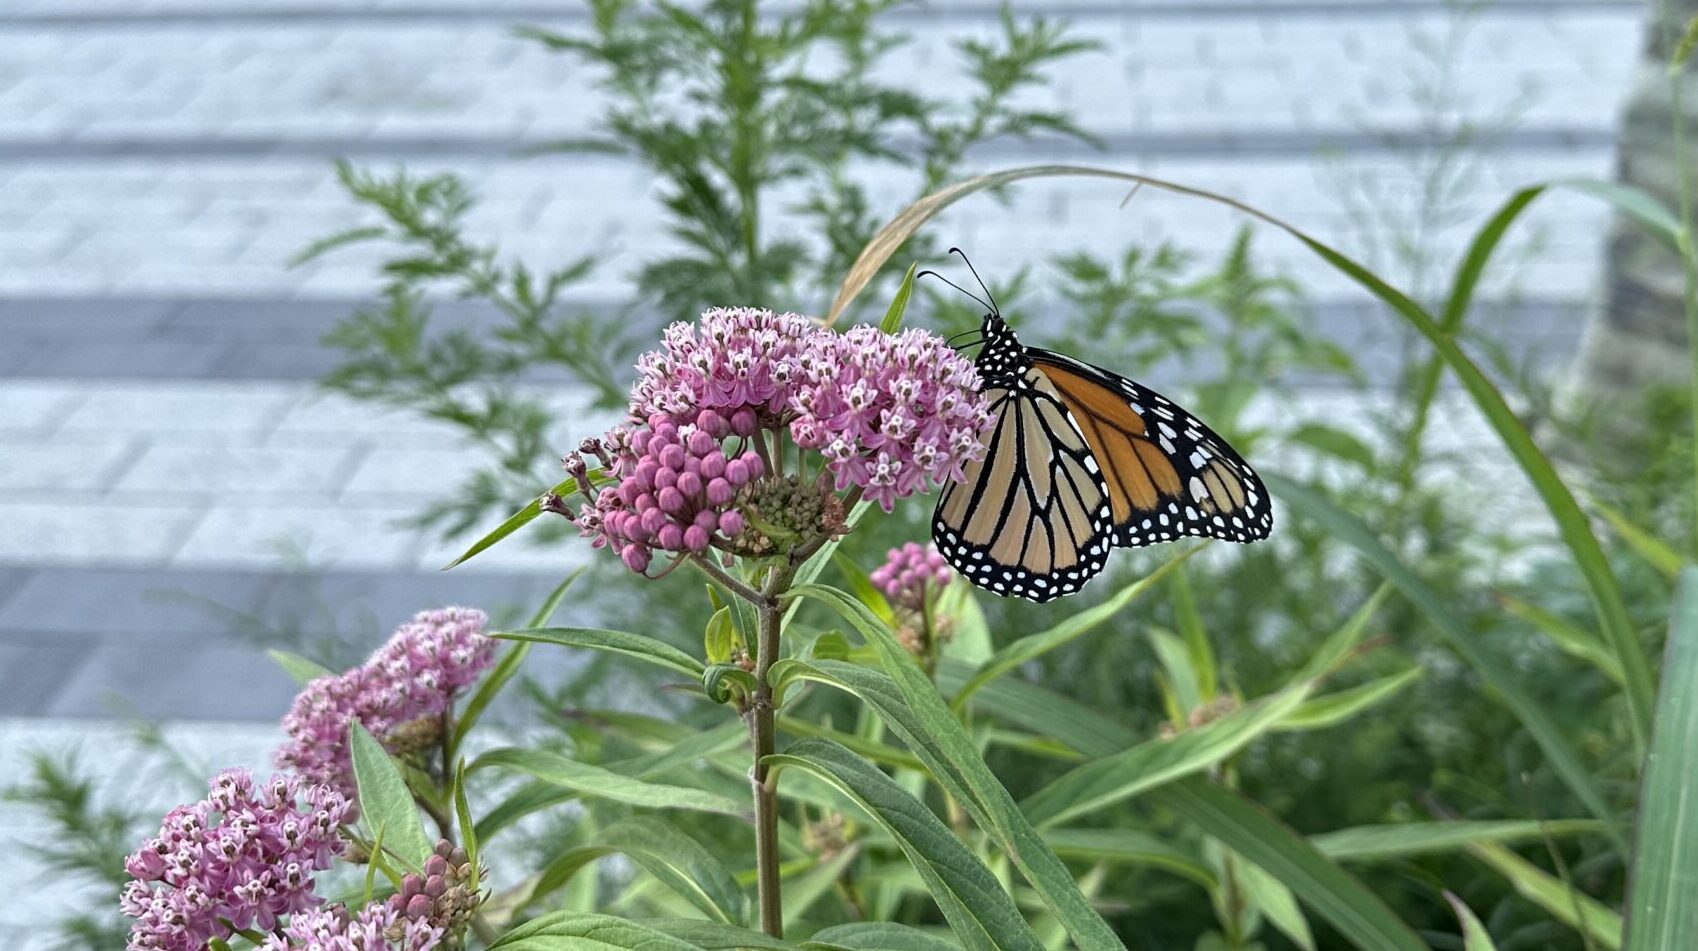 Monarch butterfly feeding on a swamp milkweed plant in Bushwick Inlet Park